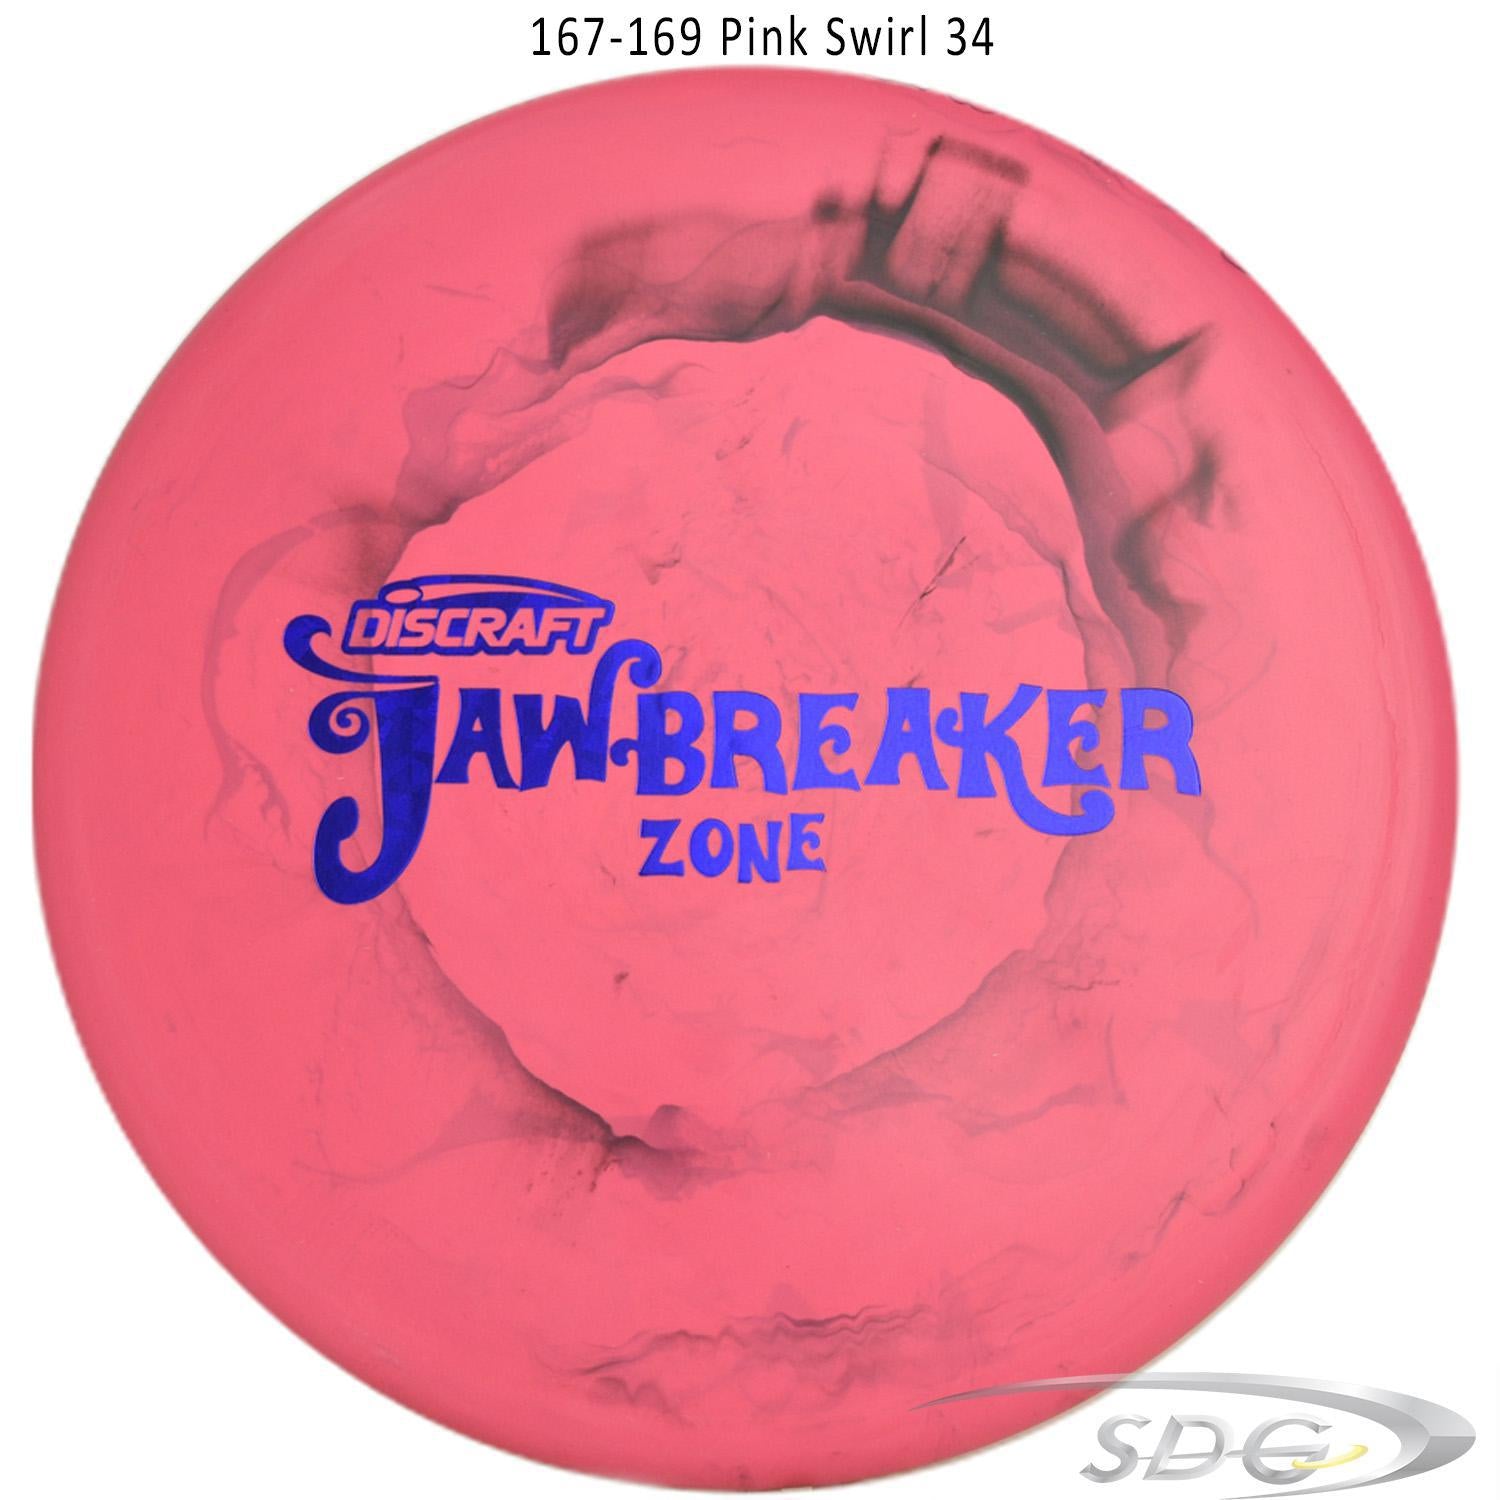 discraft-jawbreaker-zone-disc-golf-putter-169-160-weights 167-169 Pink Swirl 34 